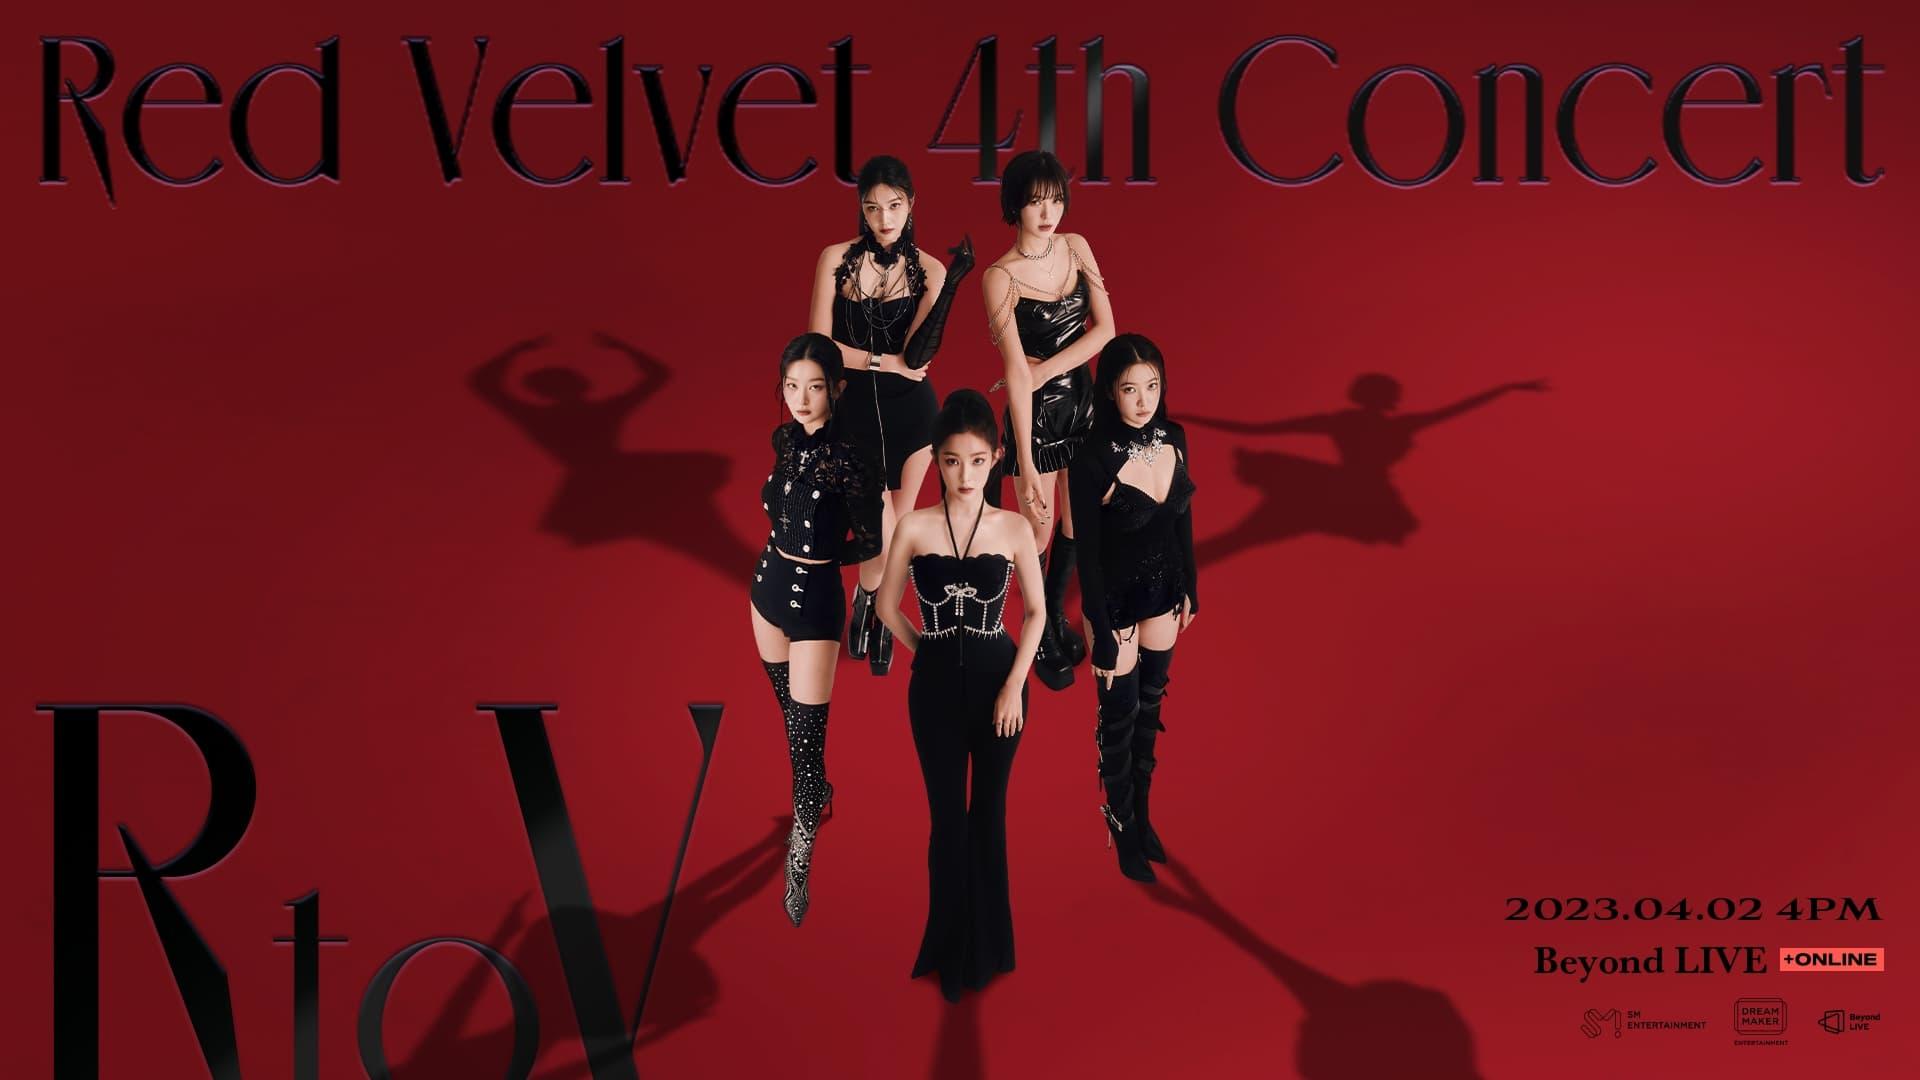 Red Velvet 4th Concert : R to V - Live Broadcast! backdrop